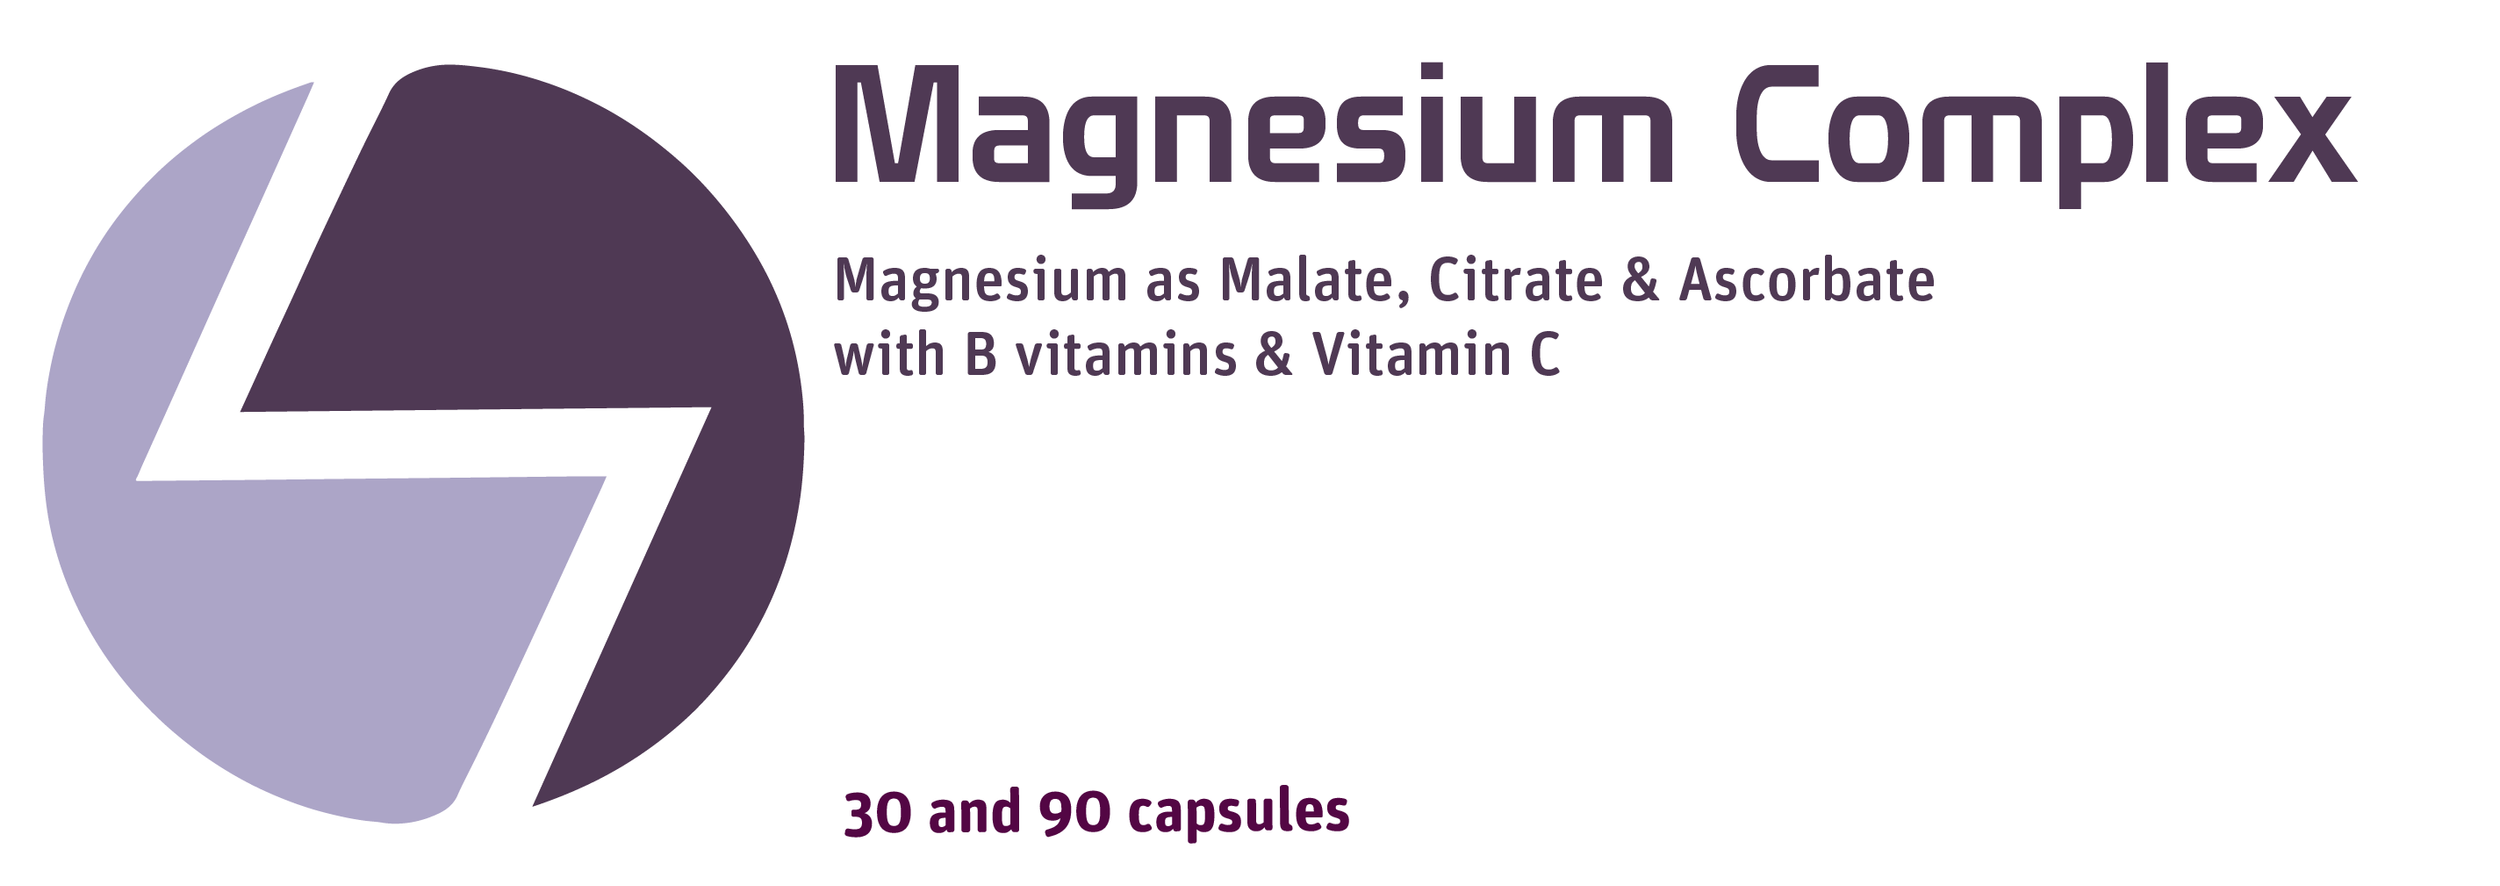 Magnesium Complex 23 v2-01.png